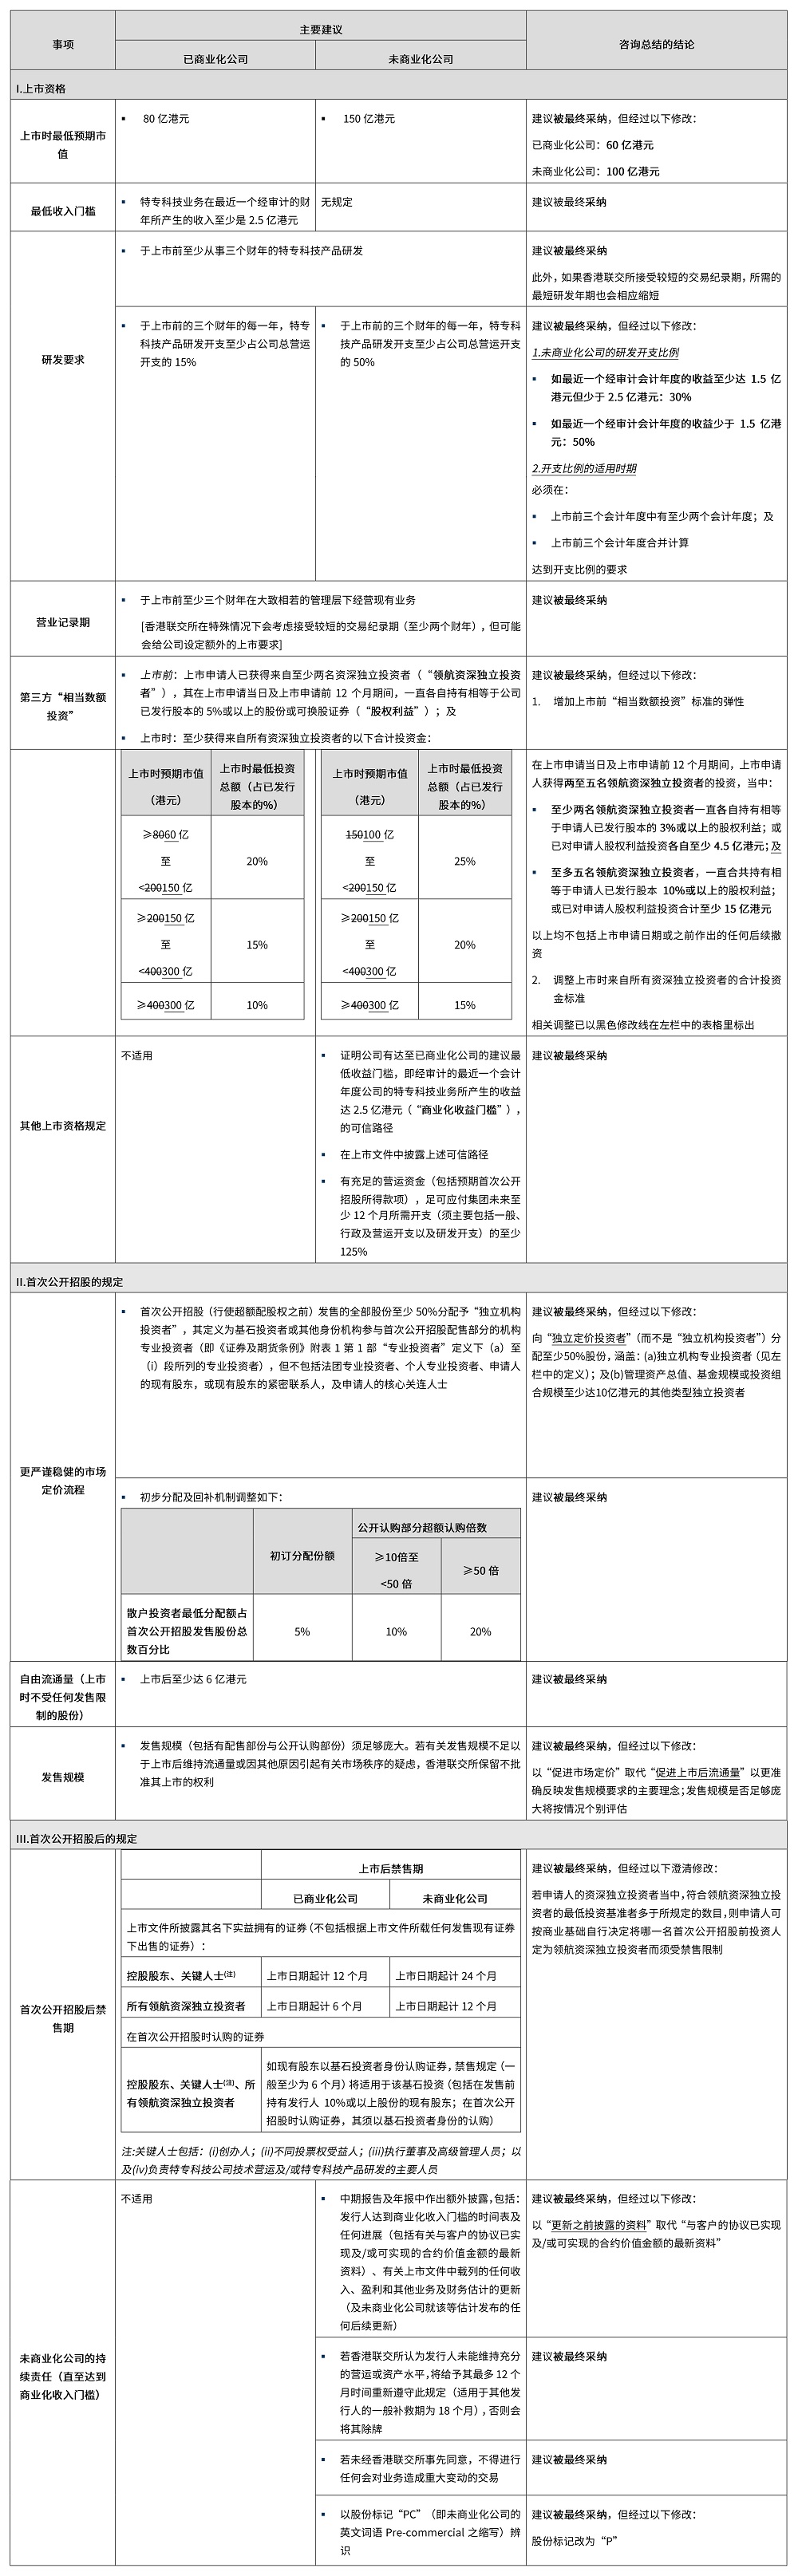 汉坤法律评述_香港的特专科技公司上市制度_20230325-1.jpg